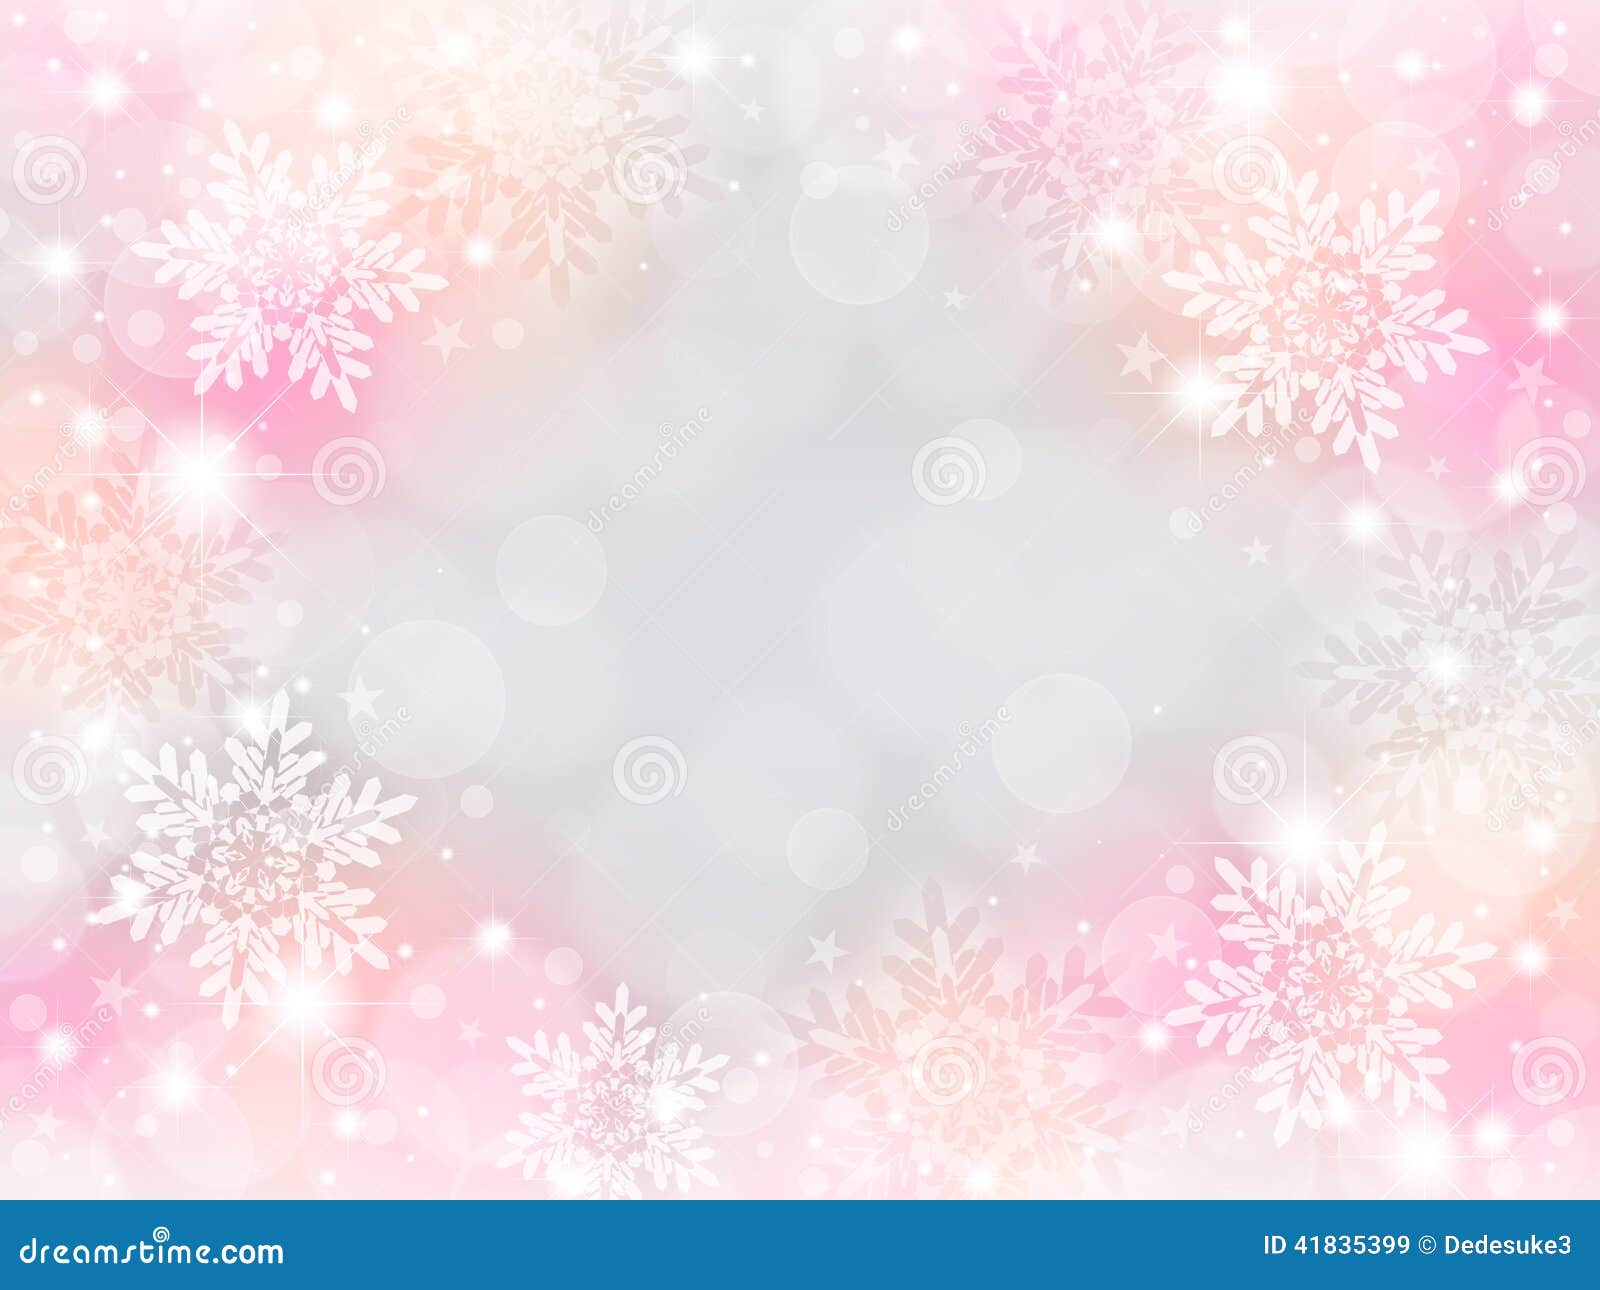 Hình ảnh nền tuyết hồng. Minh họa của Giáng sinh…: Khám phá hình ảnh tuyết rơi màu hồng trên nền đen tối của chúng tôi, đó là một minh họa tuyệt vời cho mùa lễ hội Giáng sinh. Với hình ảnh chất lượng cao và chi tiết phong phú, bạn sẽ cảm nhận được sự lãng mạn và thần tiên của mùa Giáng sinh, mang lại cho bạn cảm giác ấm áp và hạnh phúc.